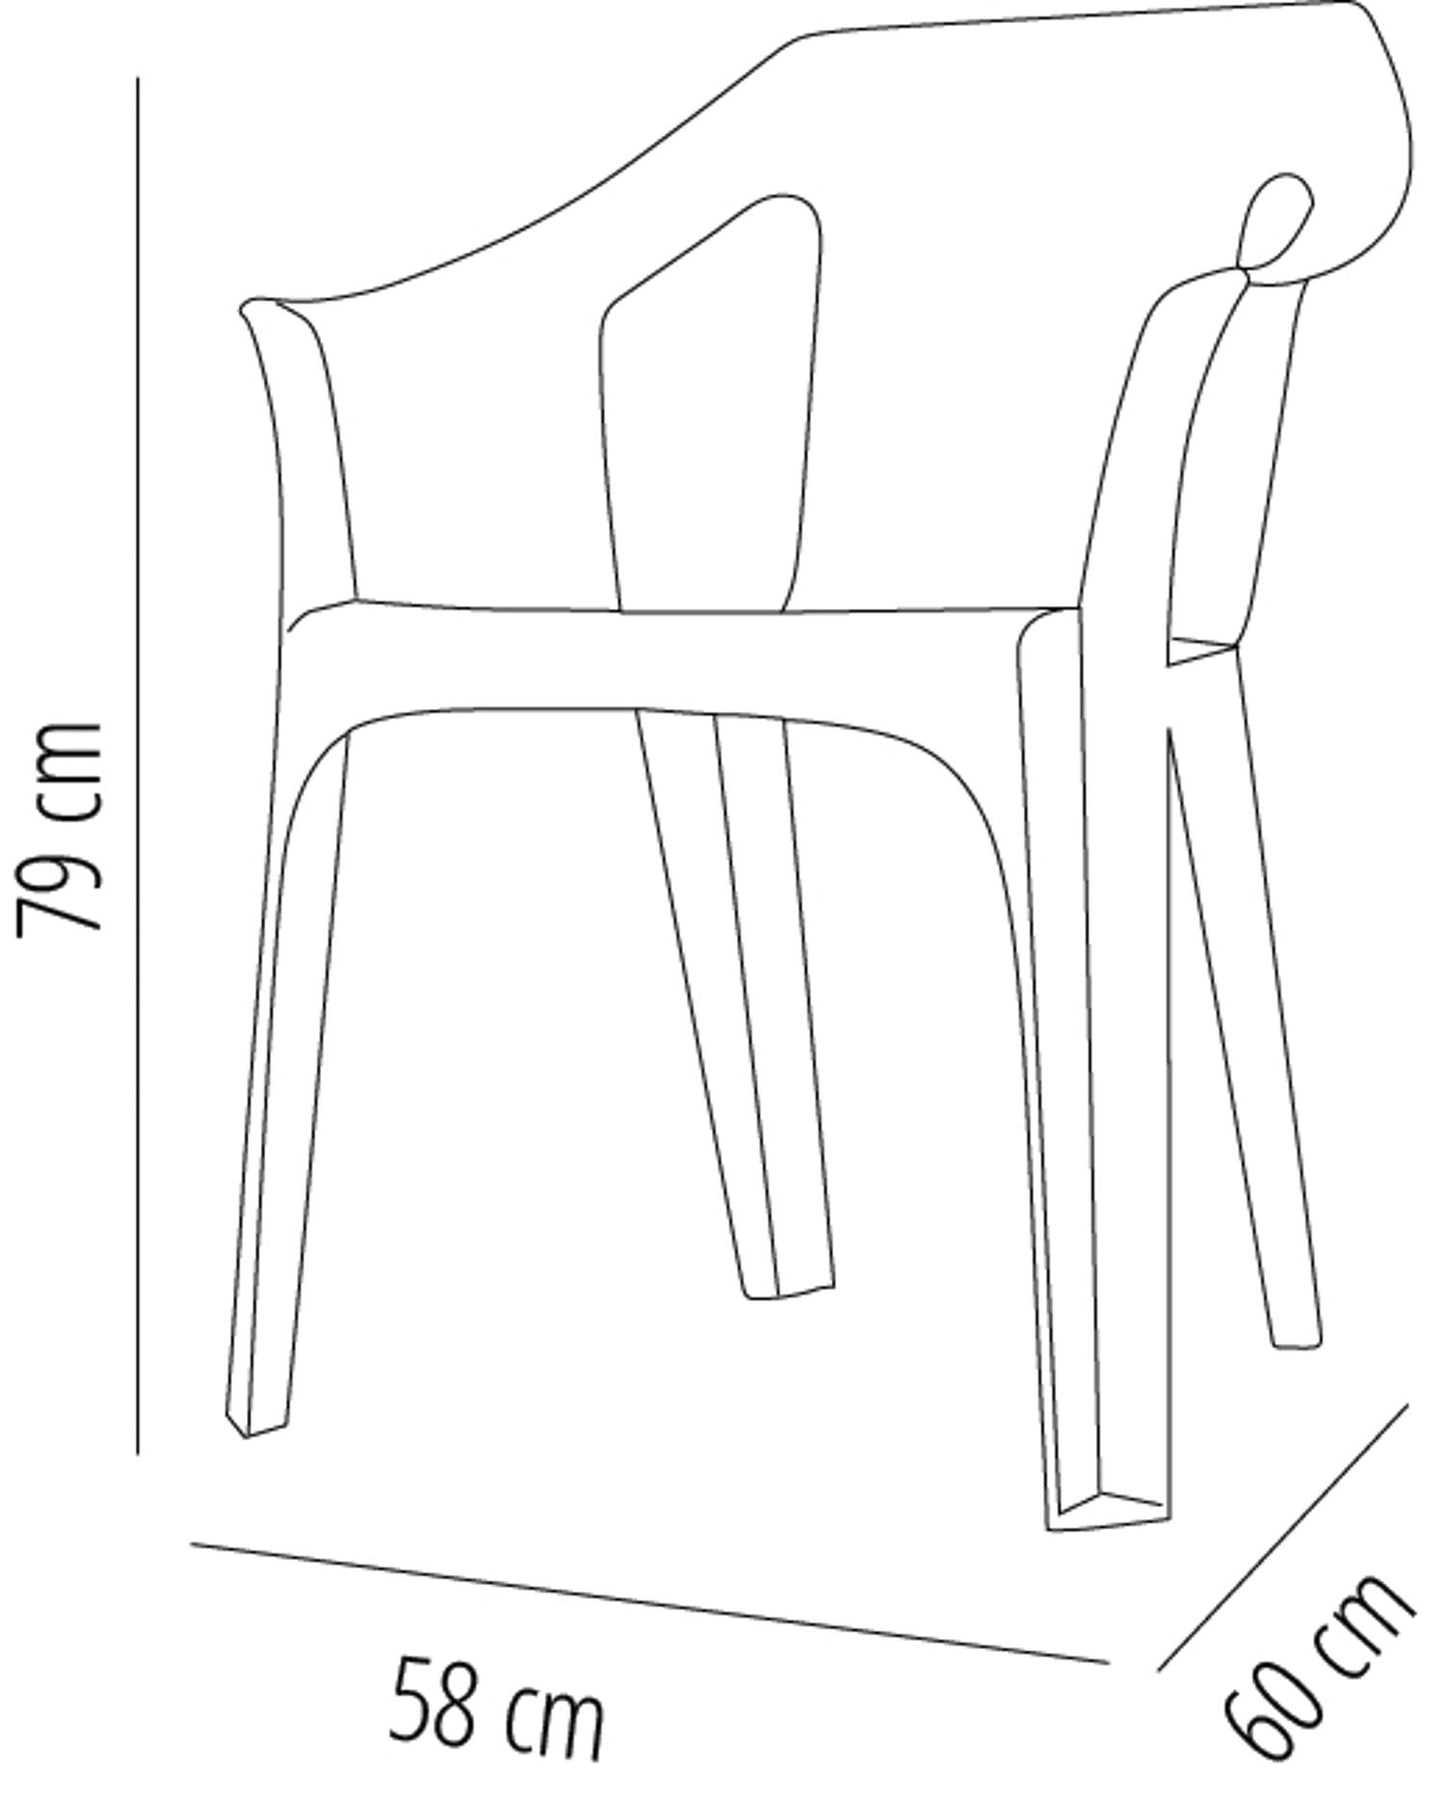 Garbar cool set 2 silla con brazos exterior verde lima